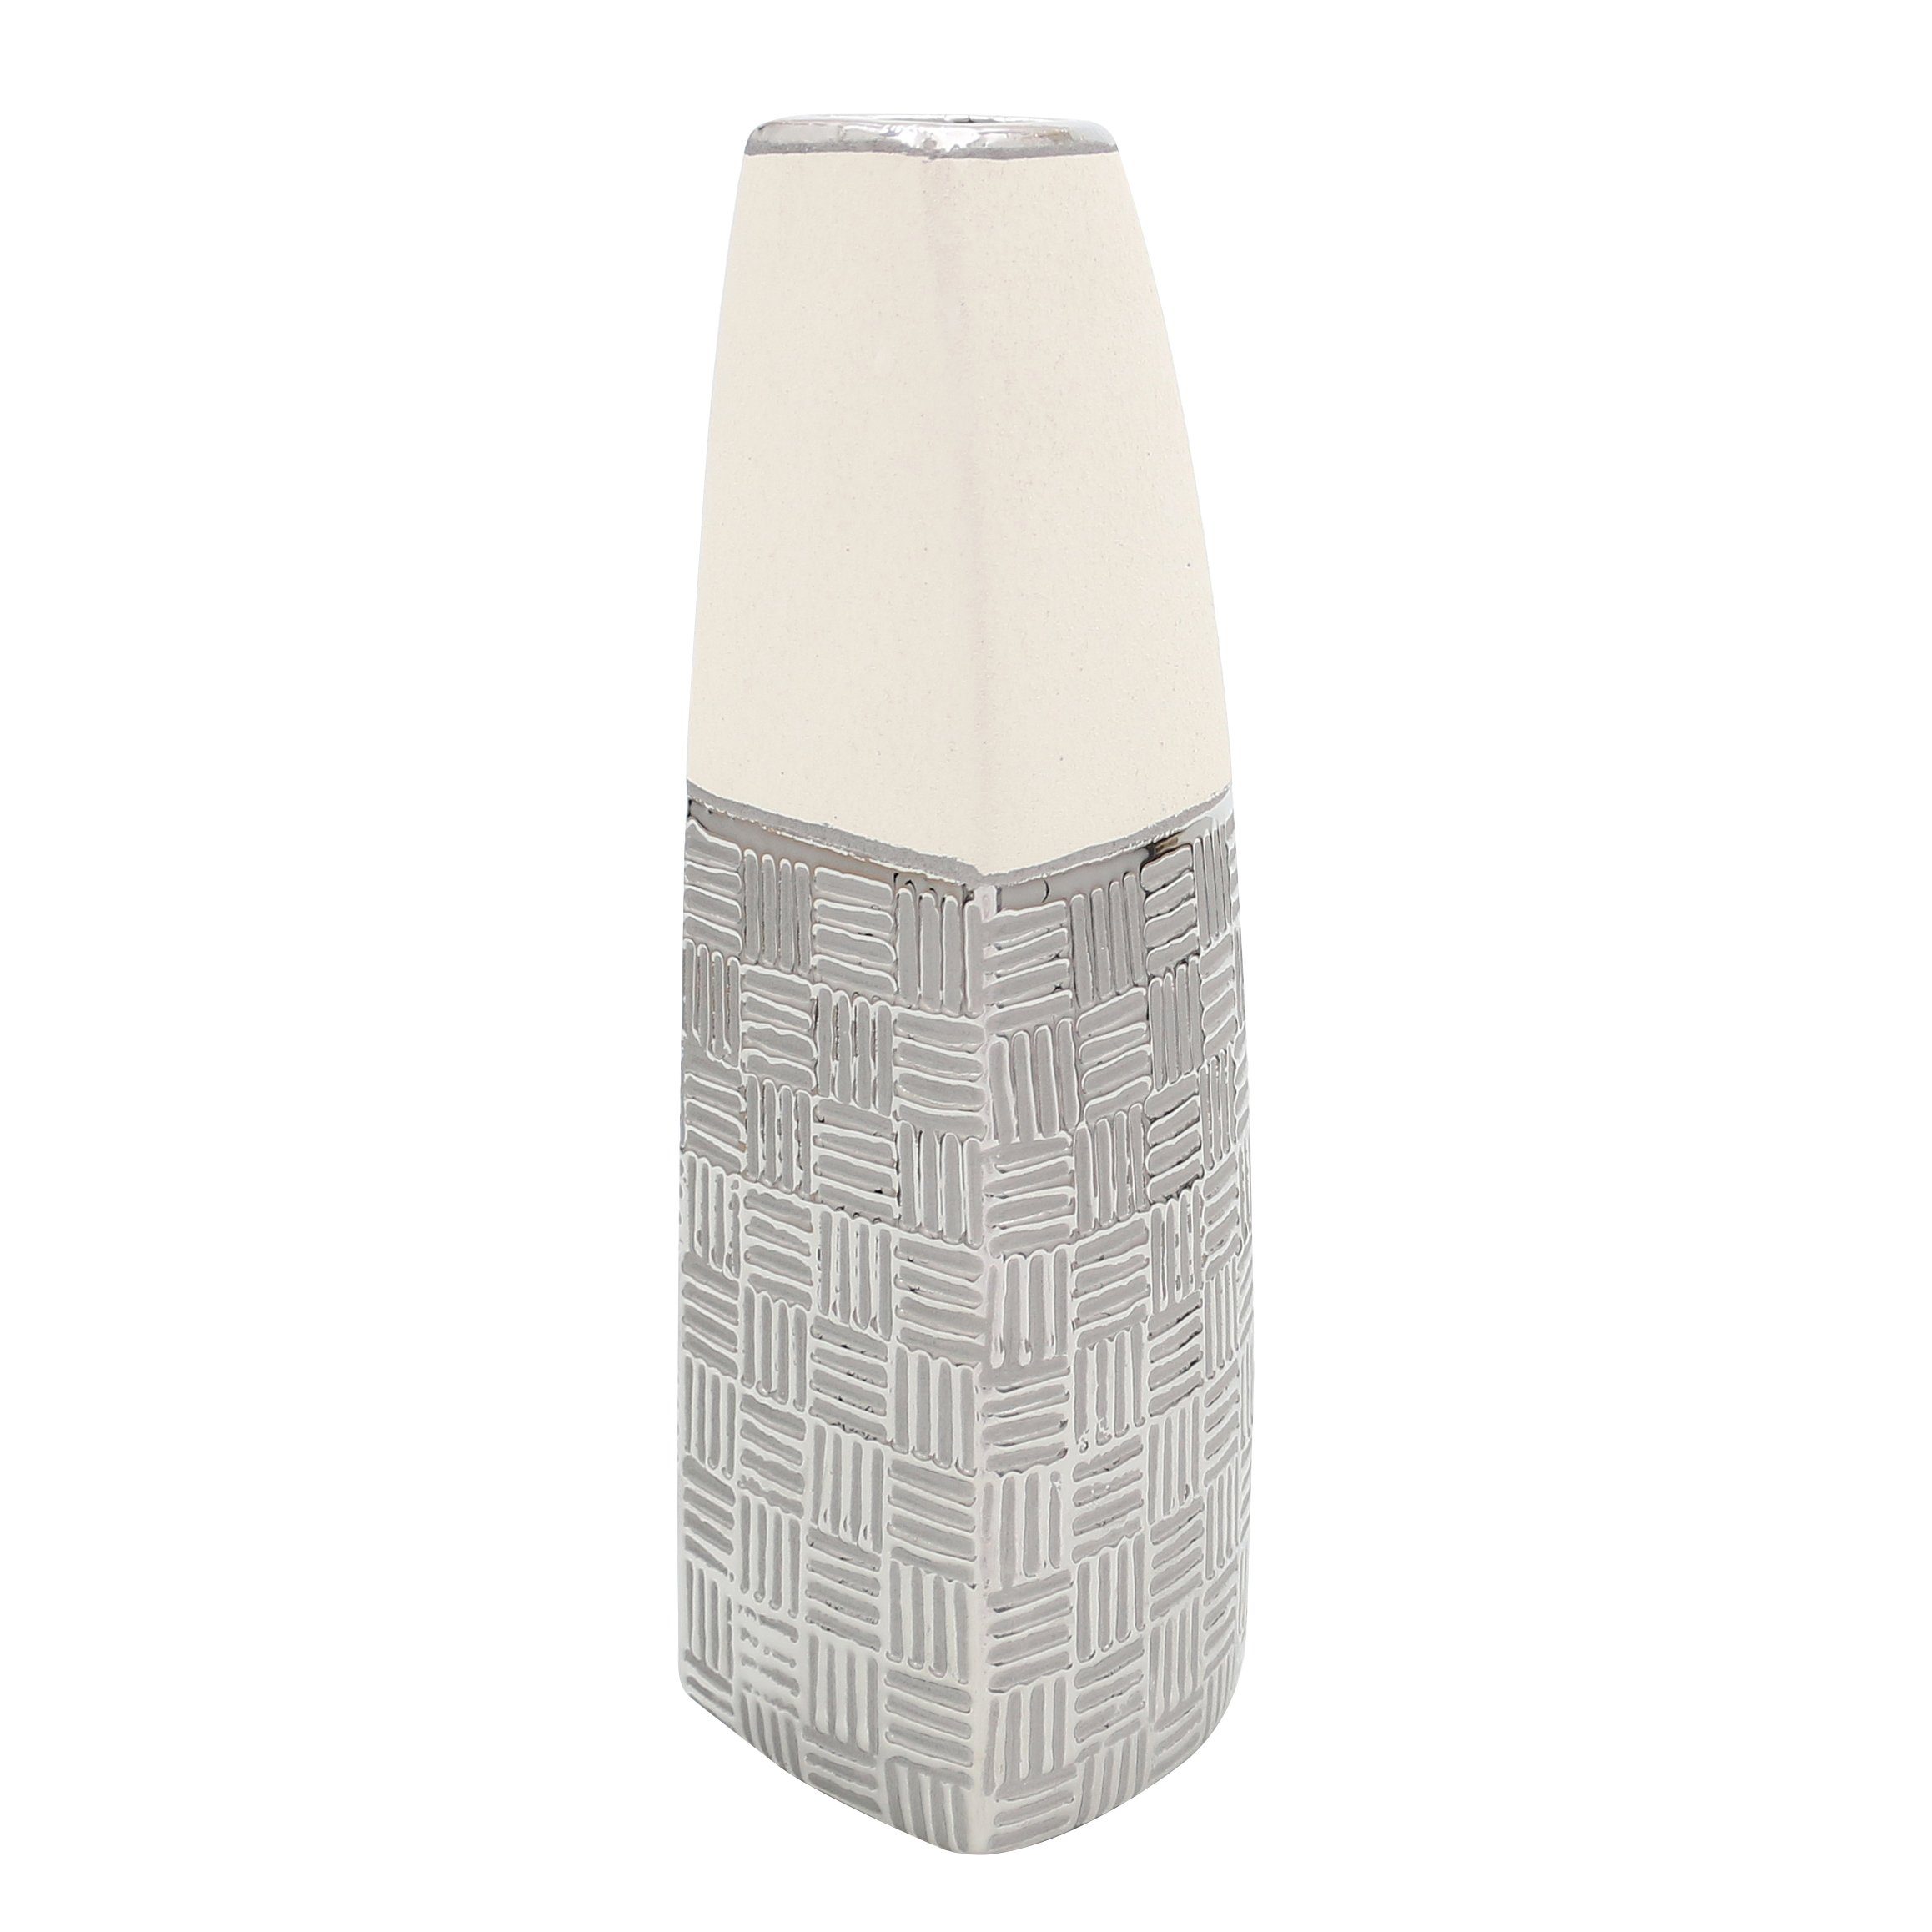 Dekohelden24 Dekovase Edle silber-grau (kein, Deko St) weiß in Designer Keramik Segel moderne Vase 1